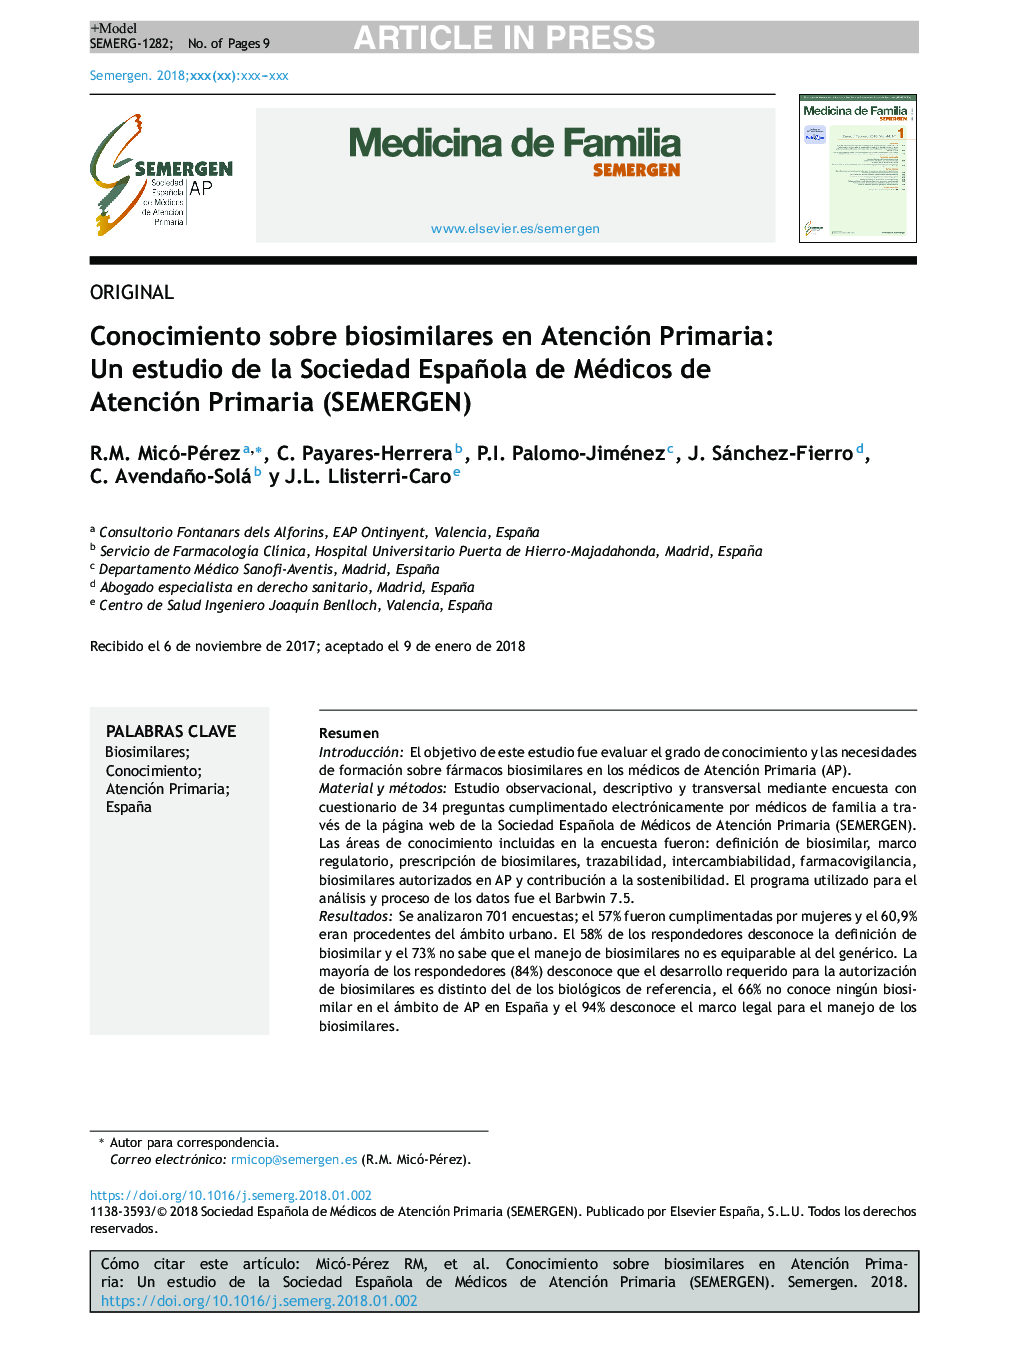 Conocimiento sobre biosimilares en Atención Primaria: Un estudio de la Sociedad Española de Médicos de Atención Primaria (SEMERGEN)